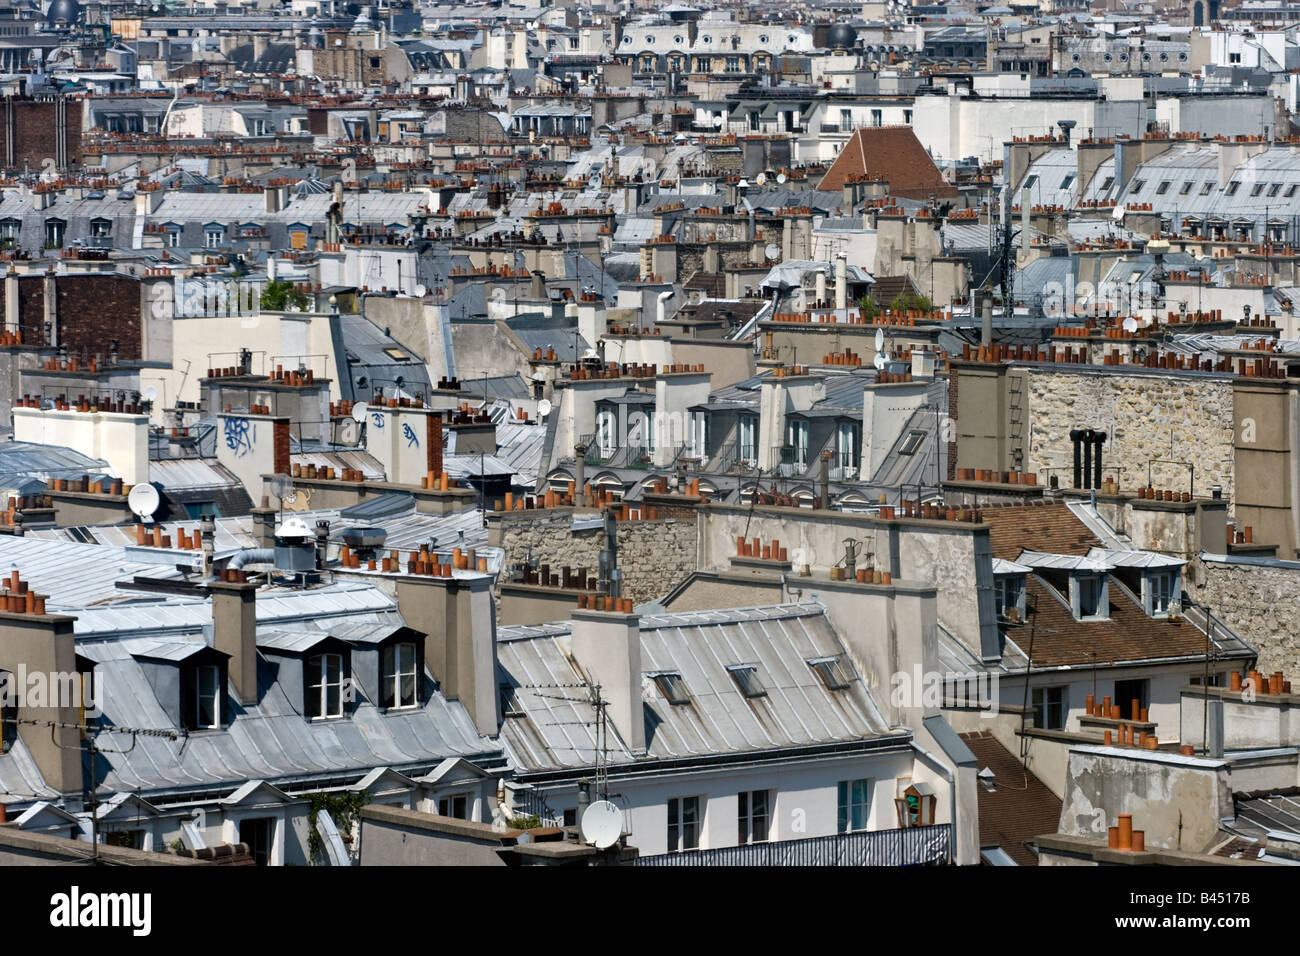 La haute densité urbaine dans le centre de Paris, France Banque D'Images